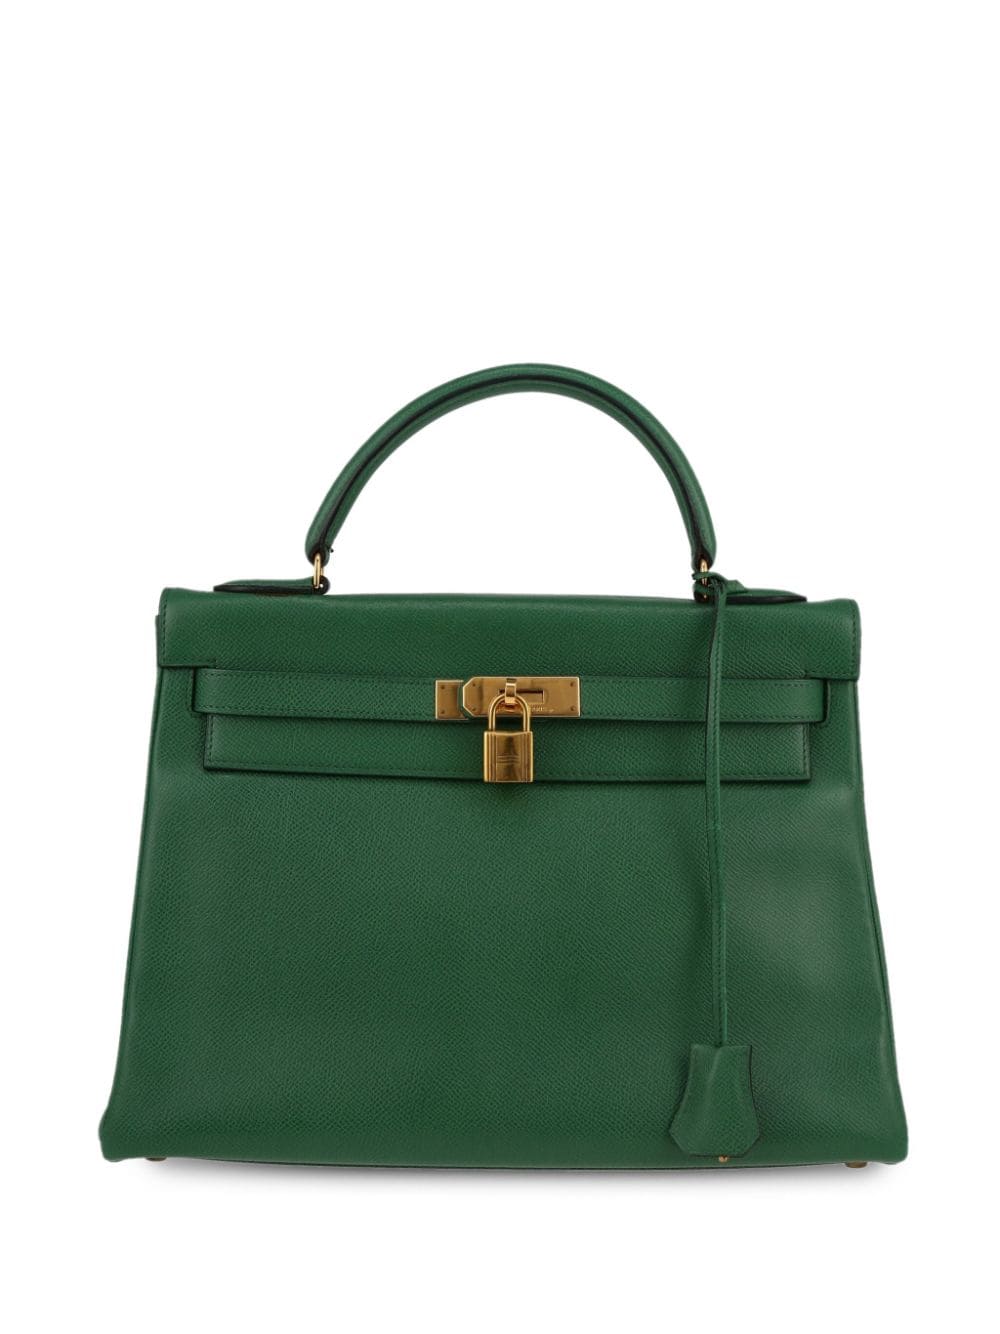 Hermès Pre-Owned Kelly 32 handbag - Green von Hermès Pre-Owned